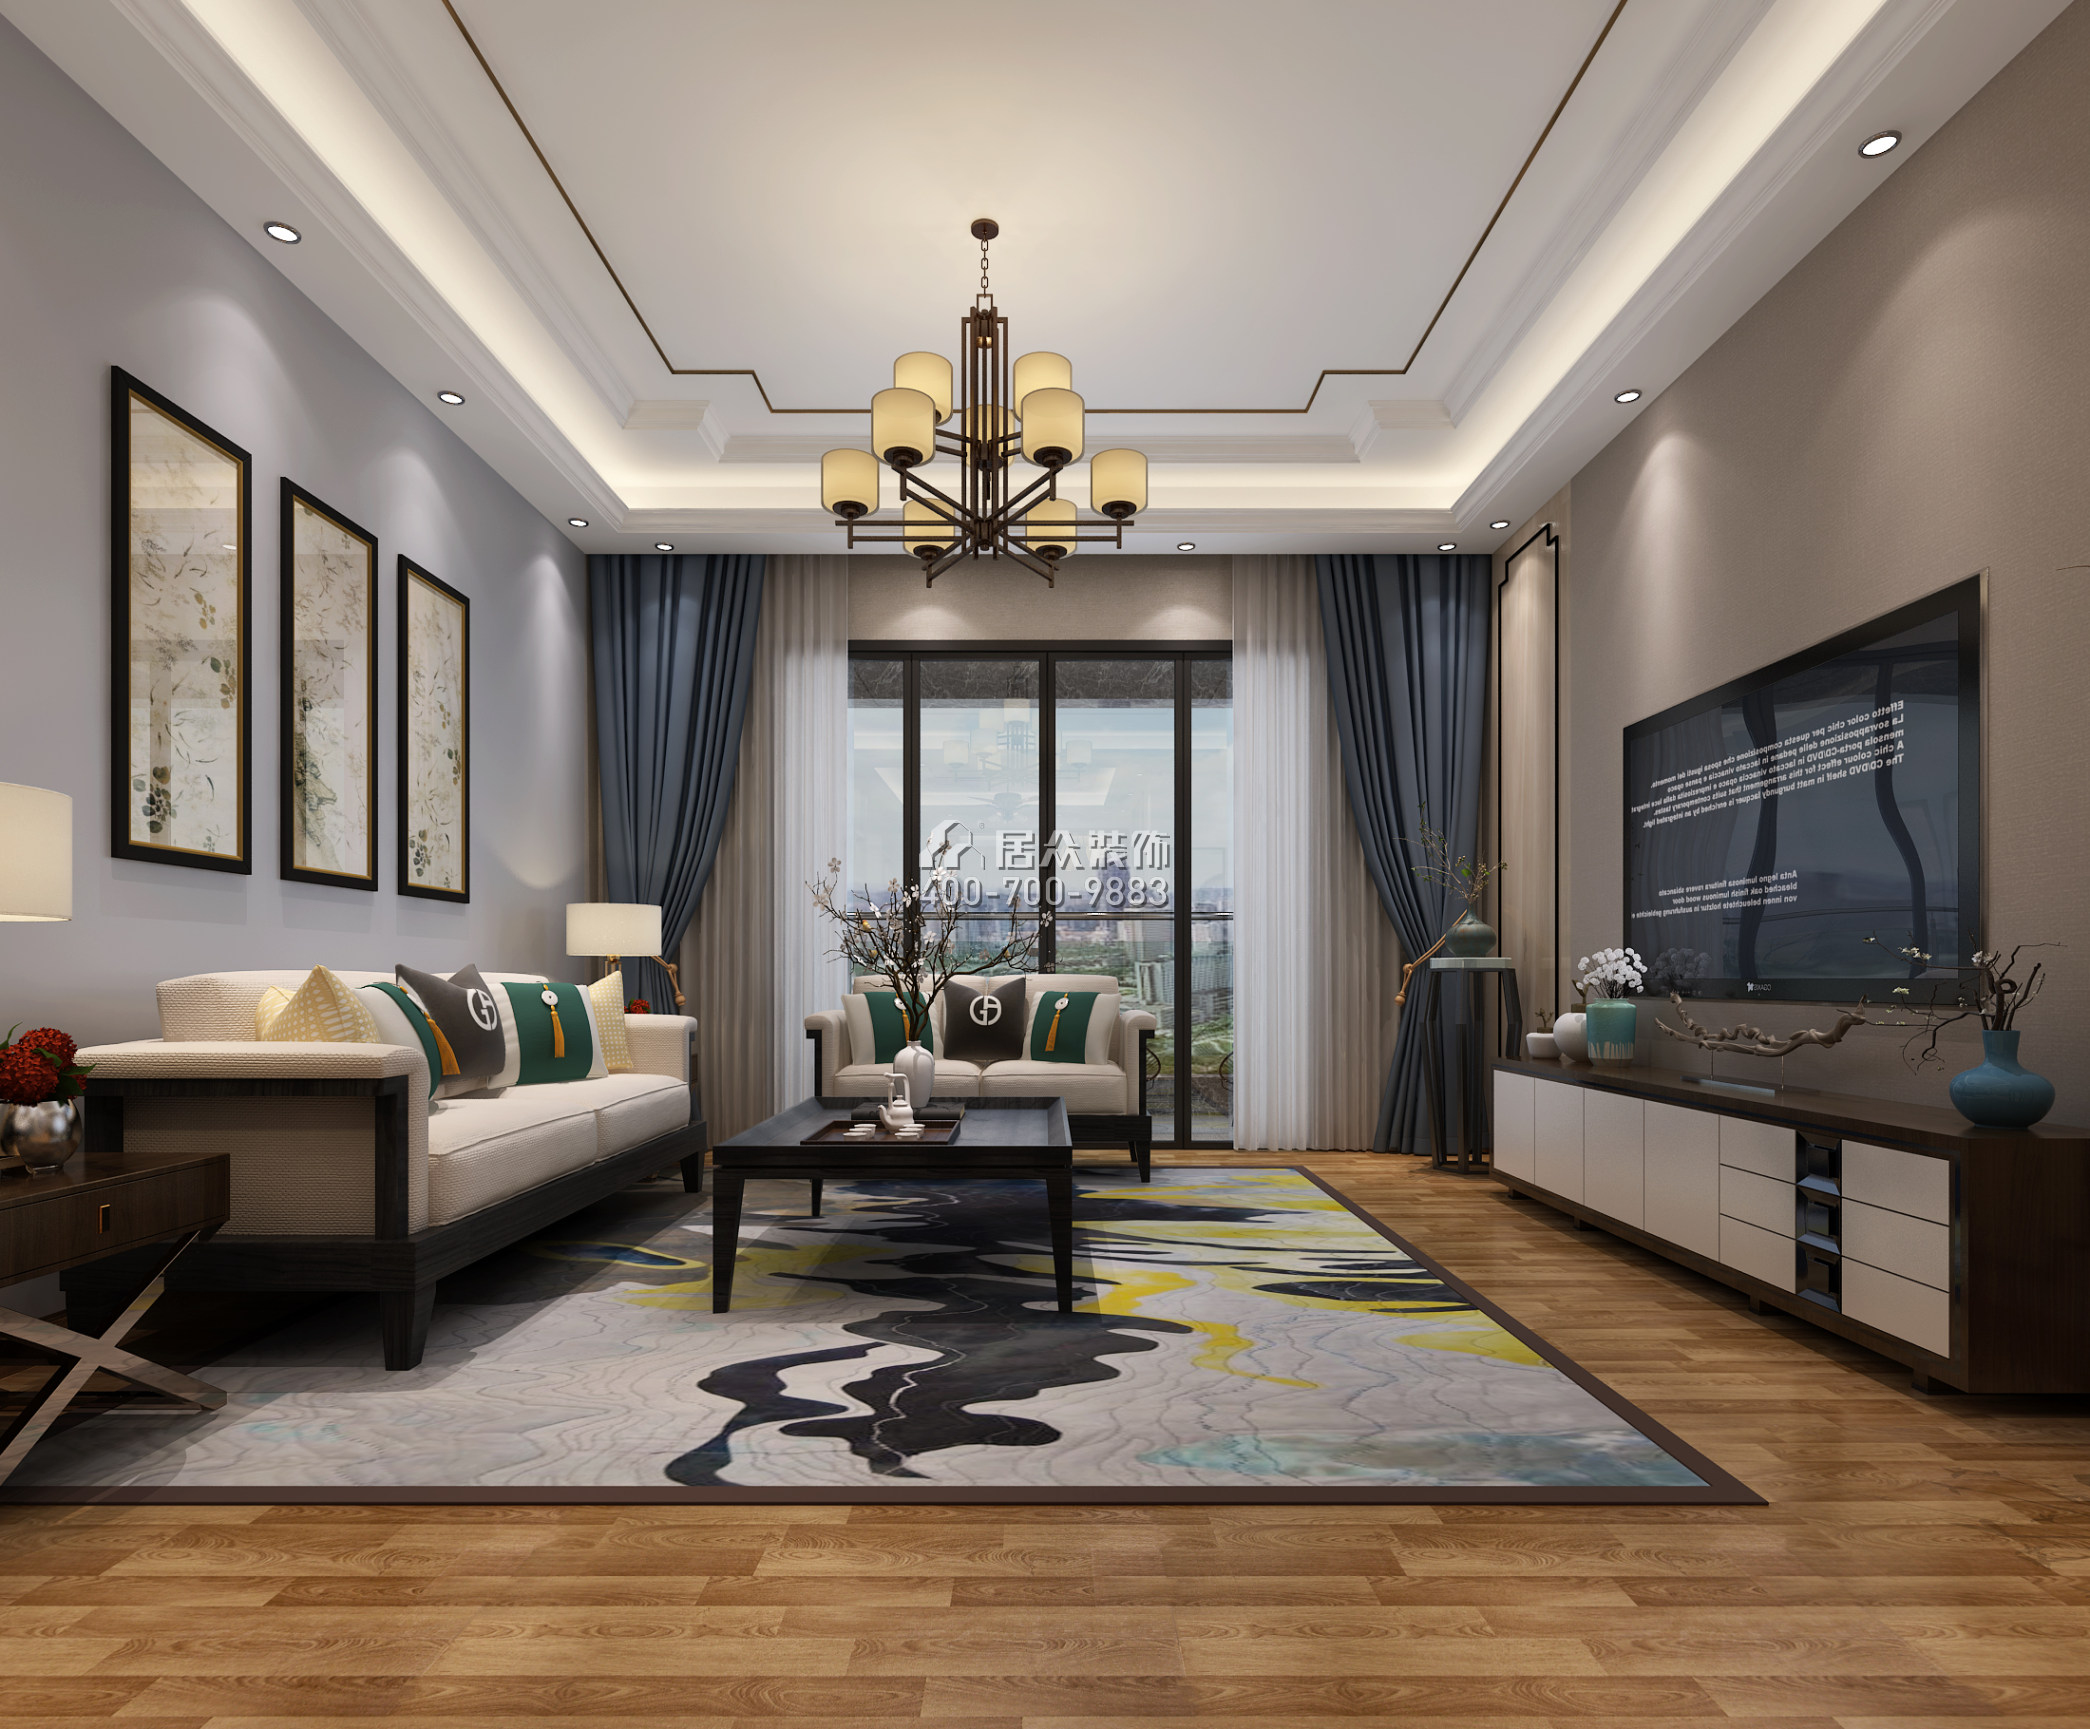 天悅灣160平方米中式風格平層戶型客廳裝修效果圖